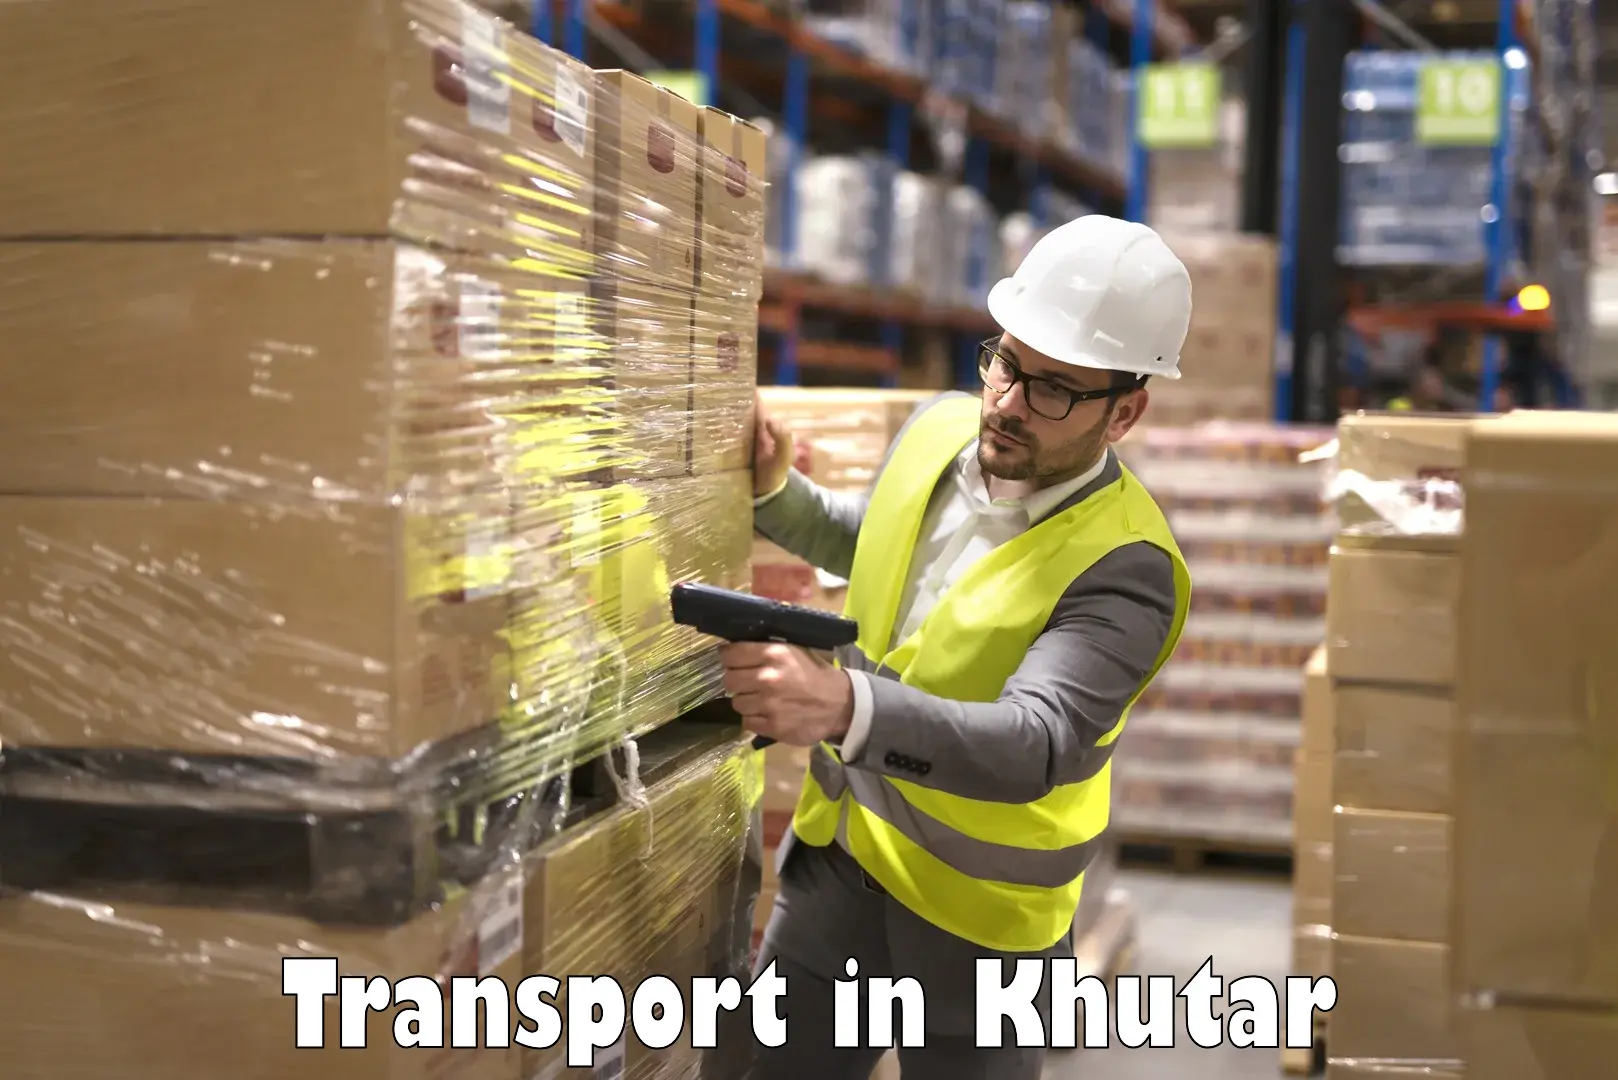 Road transport online services in Khutar